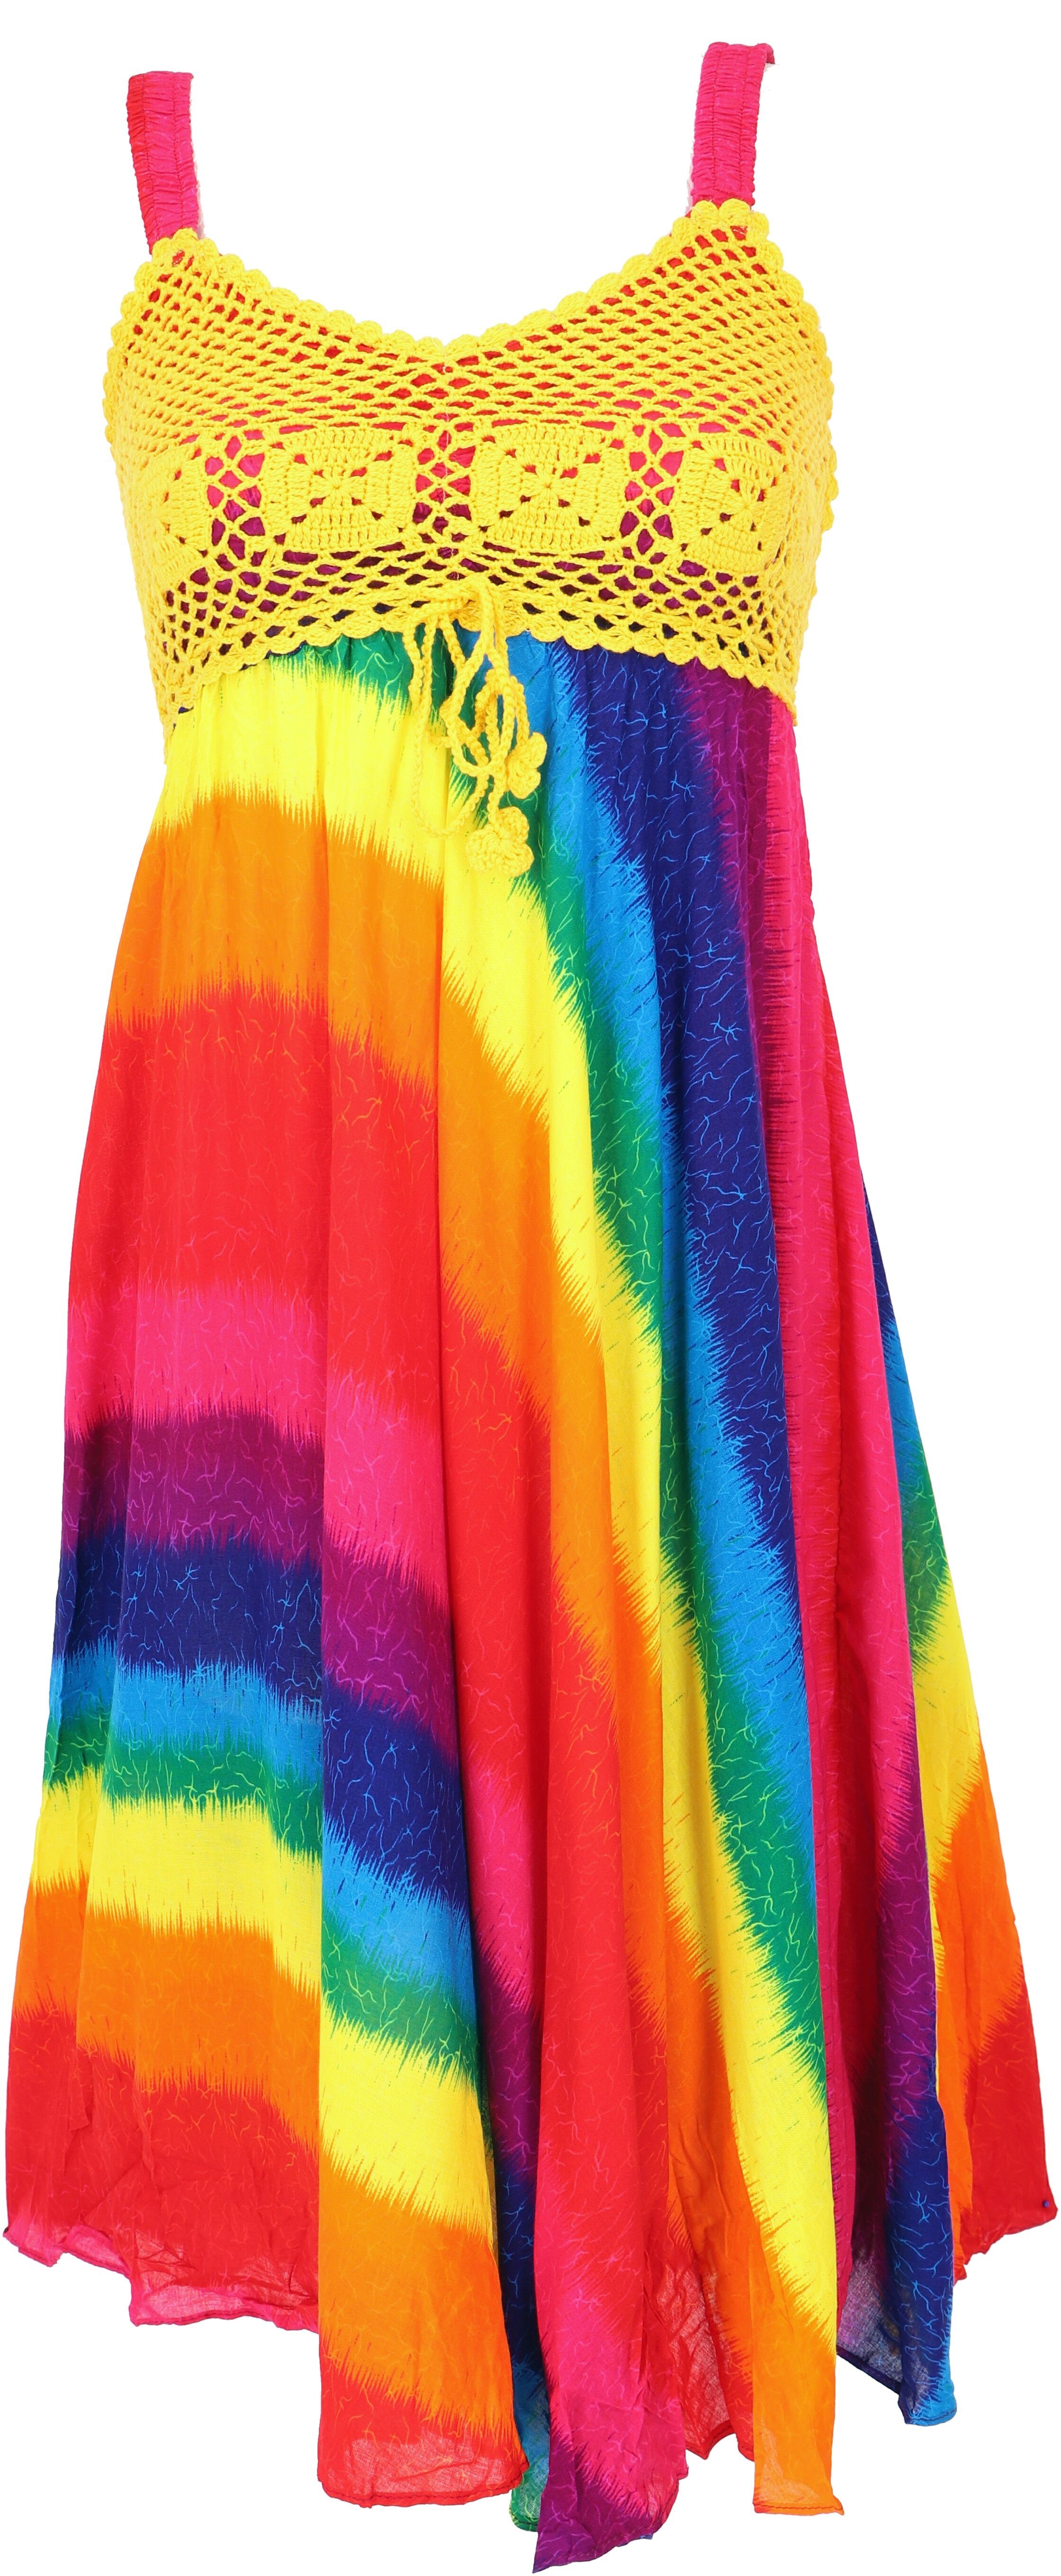 Boho Guru-Shop regenbogen/gelb Bekleidung -.. alternative Krinkelkleid Sommerkleid, Minikleid, Midikleid